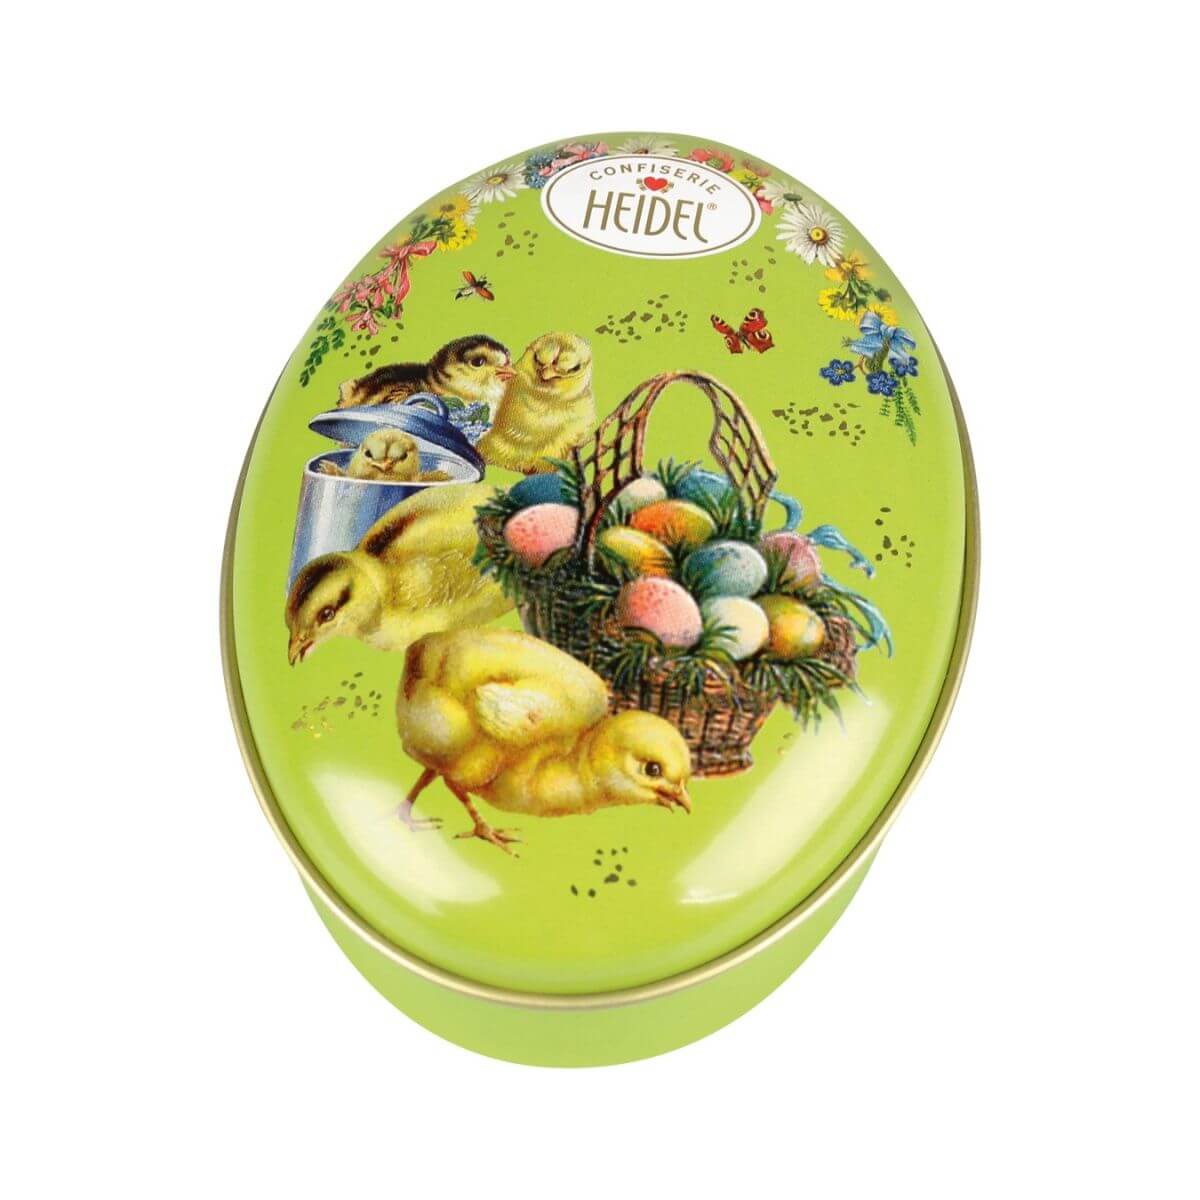 Heidel Easter Nostalgia Praline Chocolates Chick & Eggs Tin